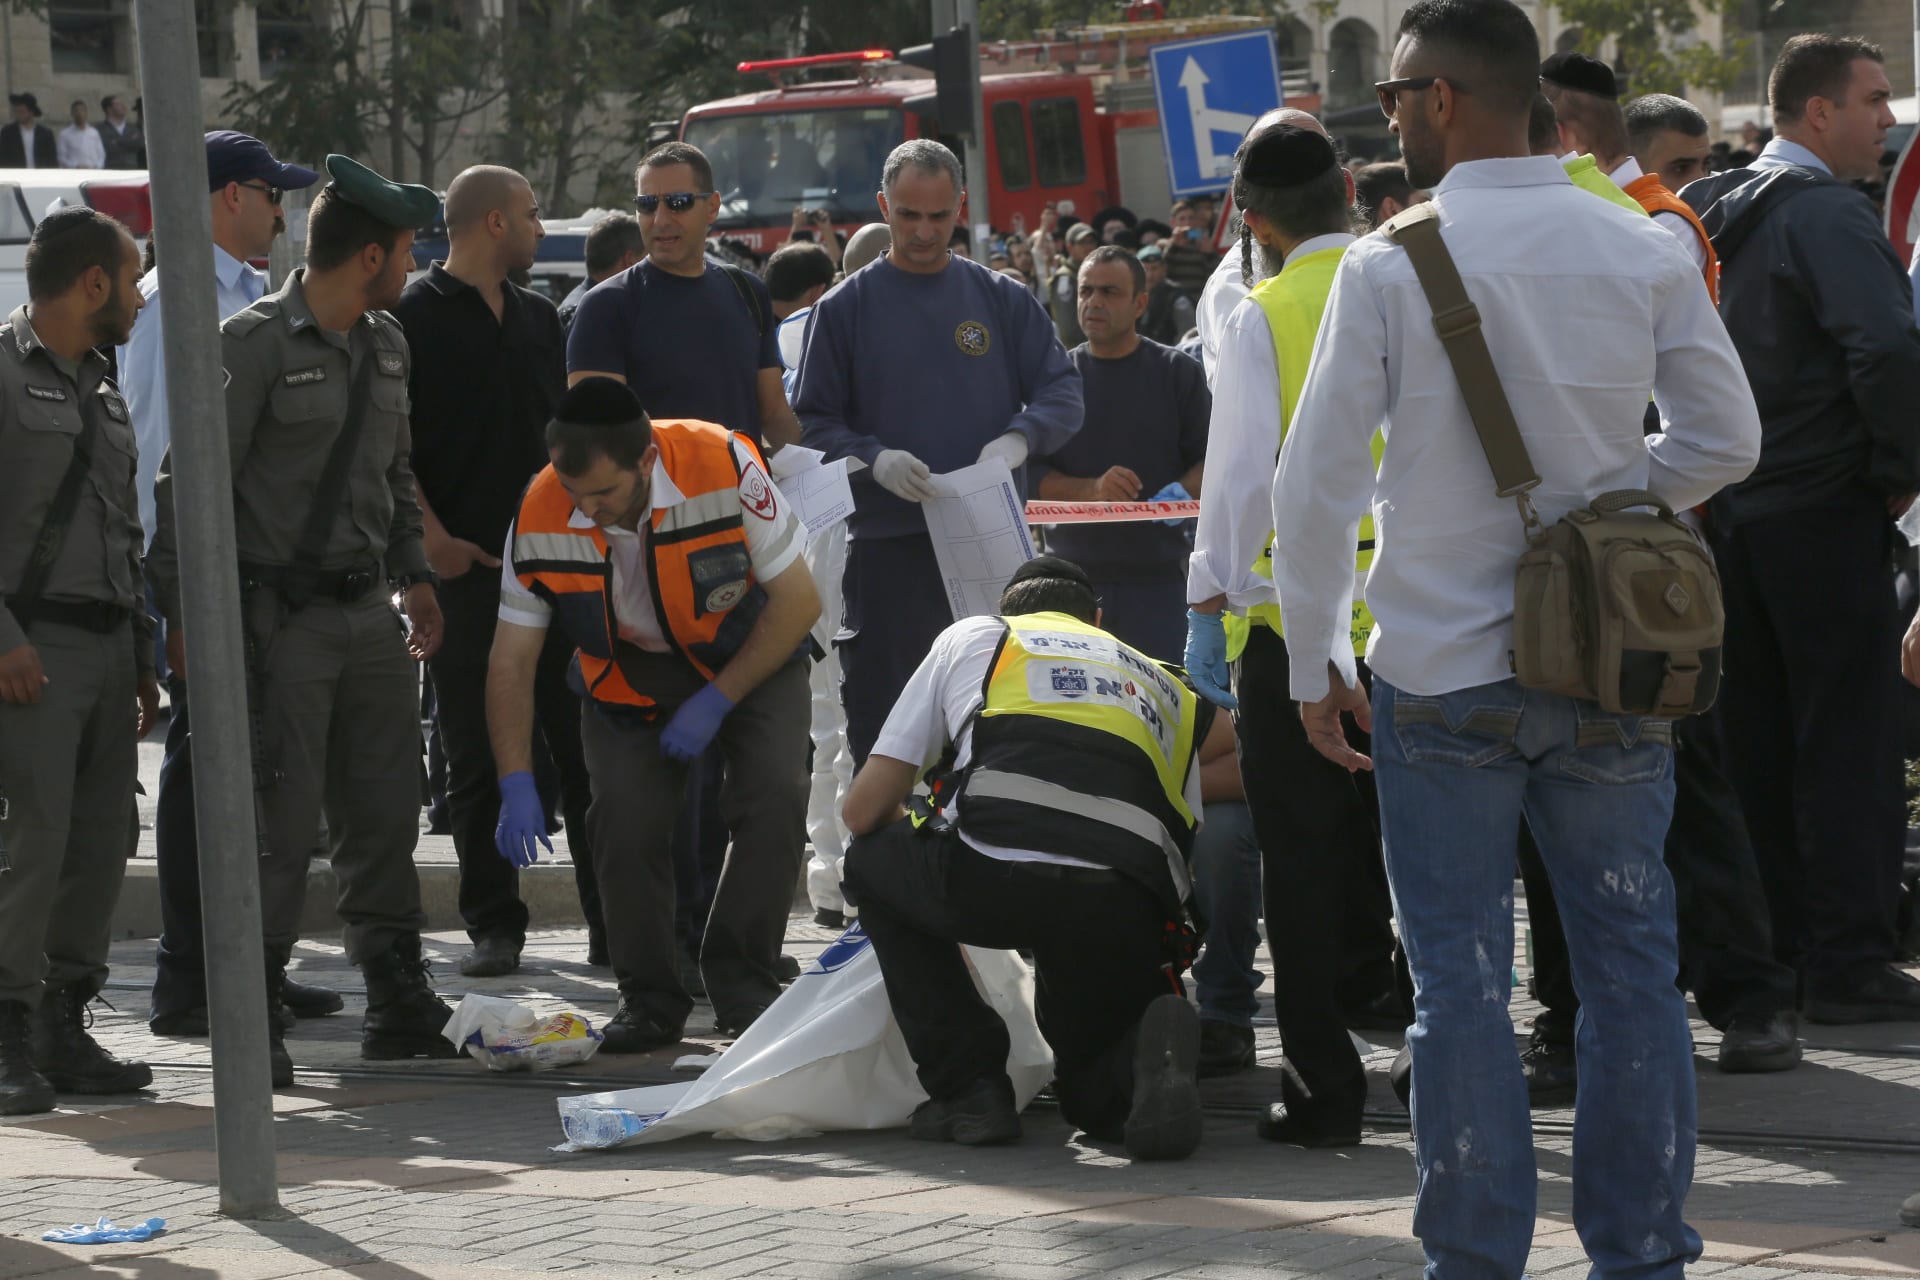 إصابة 5 شرطيات في حادث دهس بالقدس اعتبرته إسرائيل هجوما إرهابيا